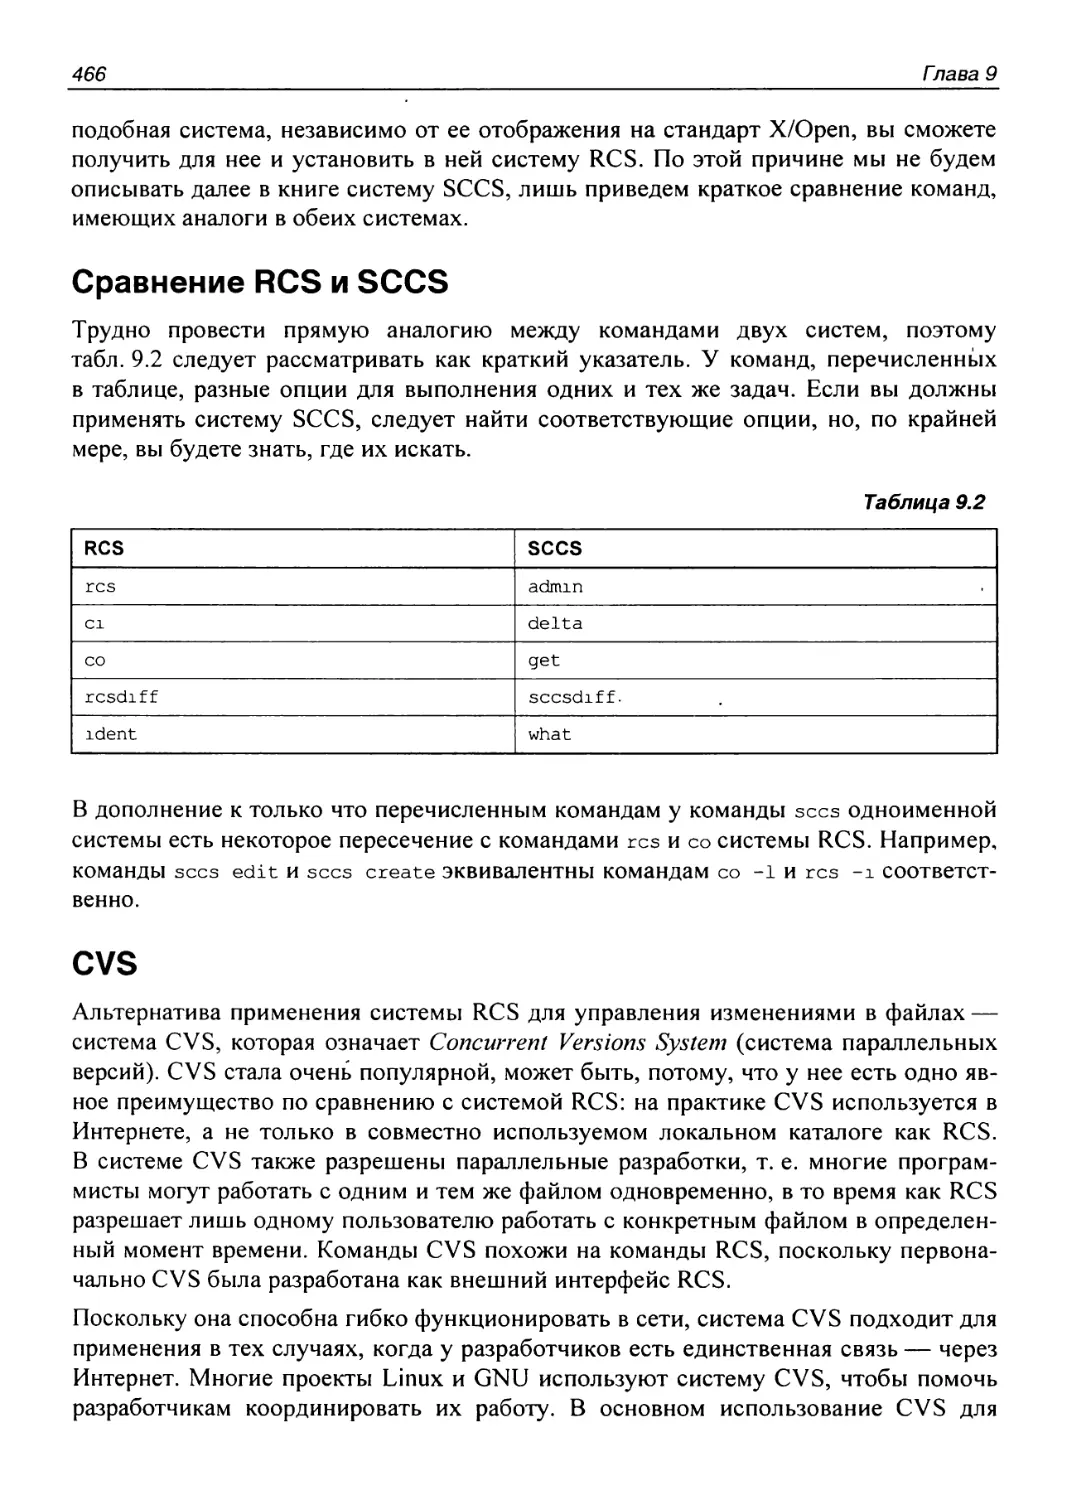 Сравнение RCS и SCCS
CVS